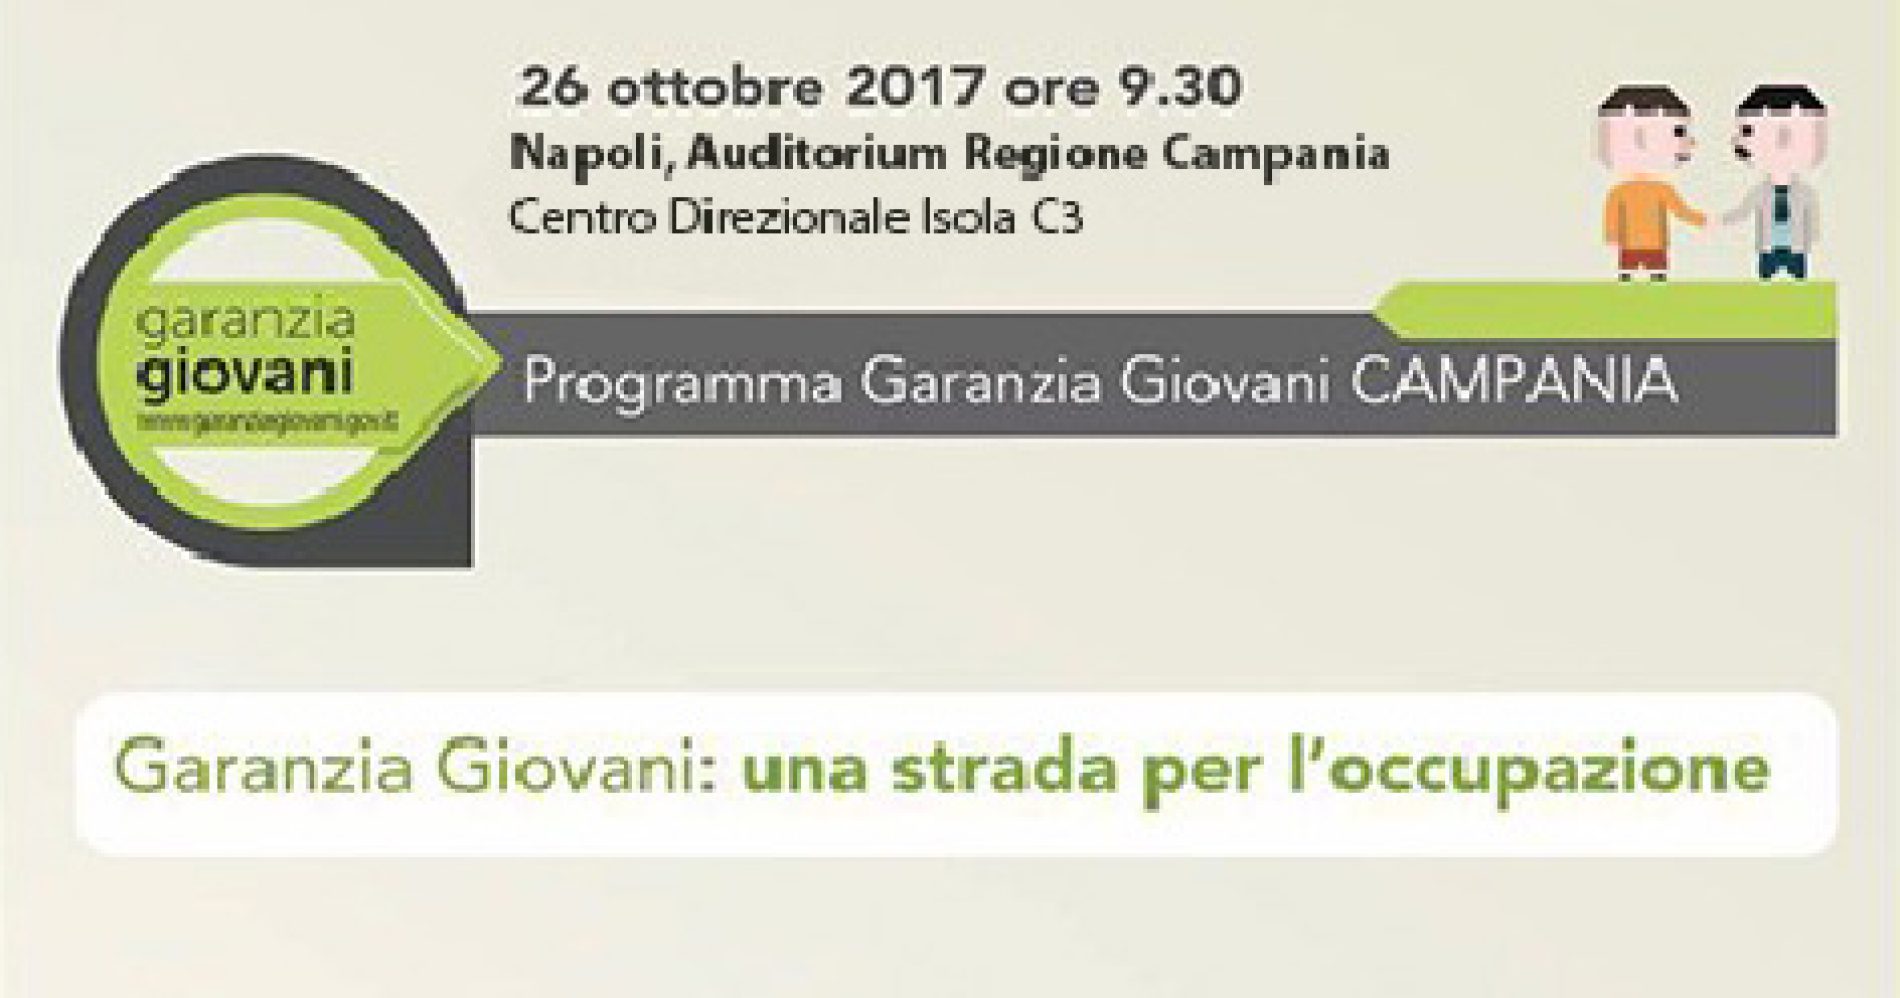 Forum a Napoli per Garanzia Giovani: “Una strada per l’occupazione”